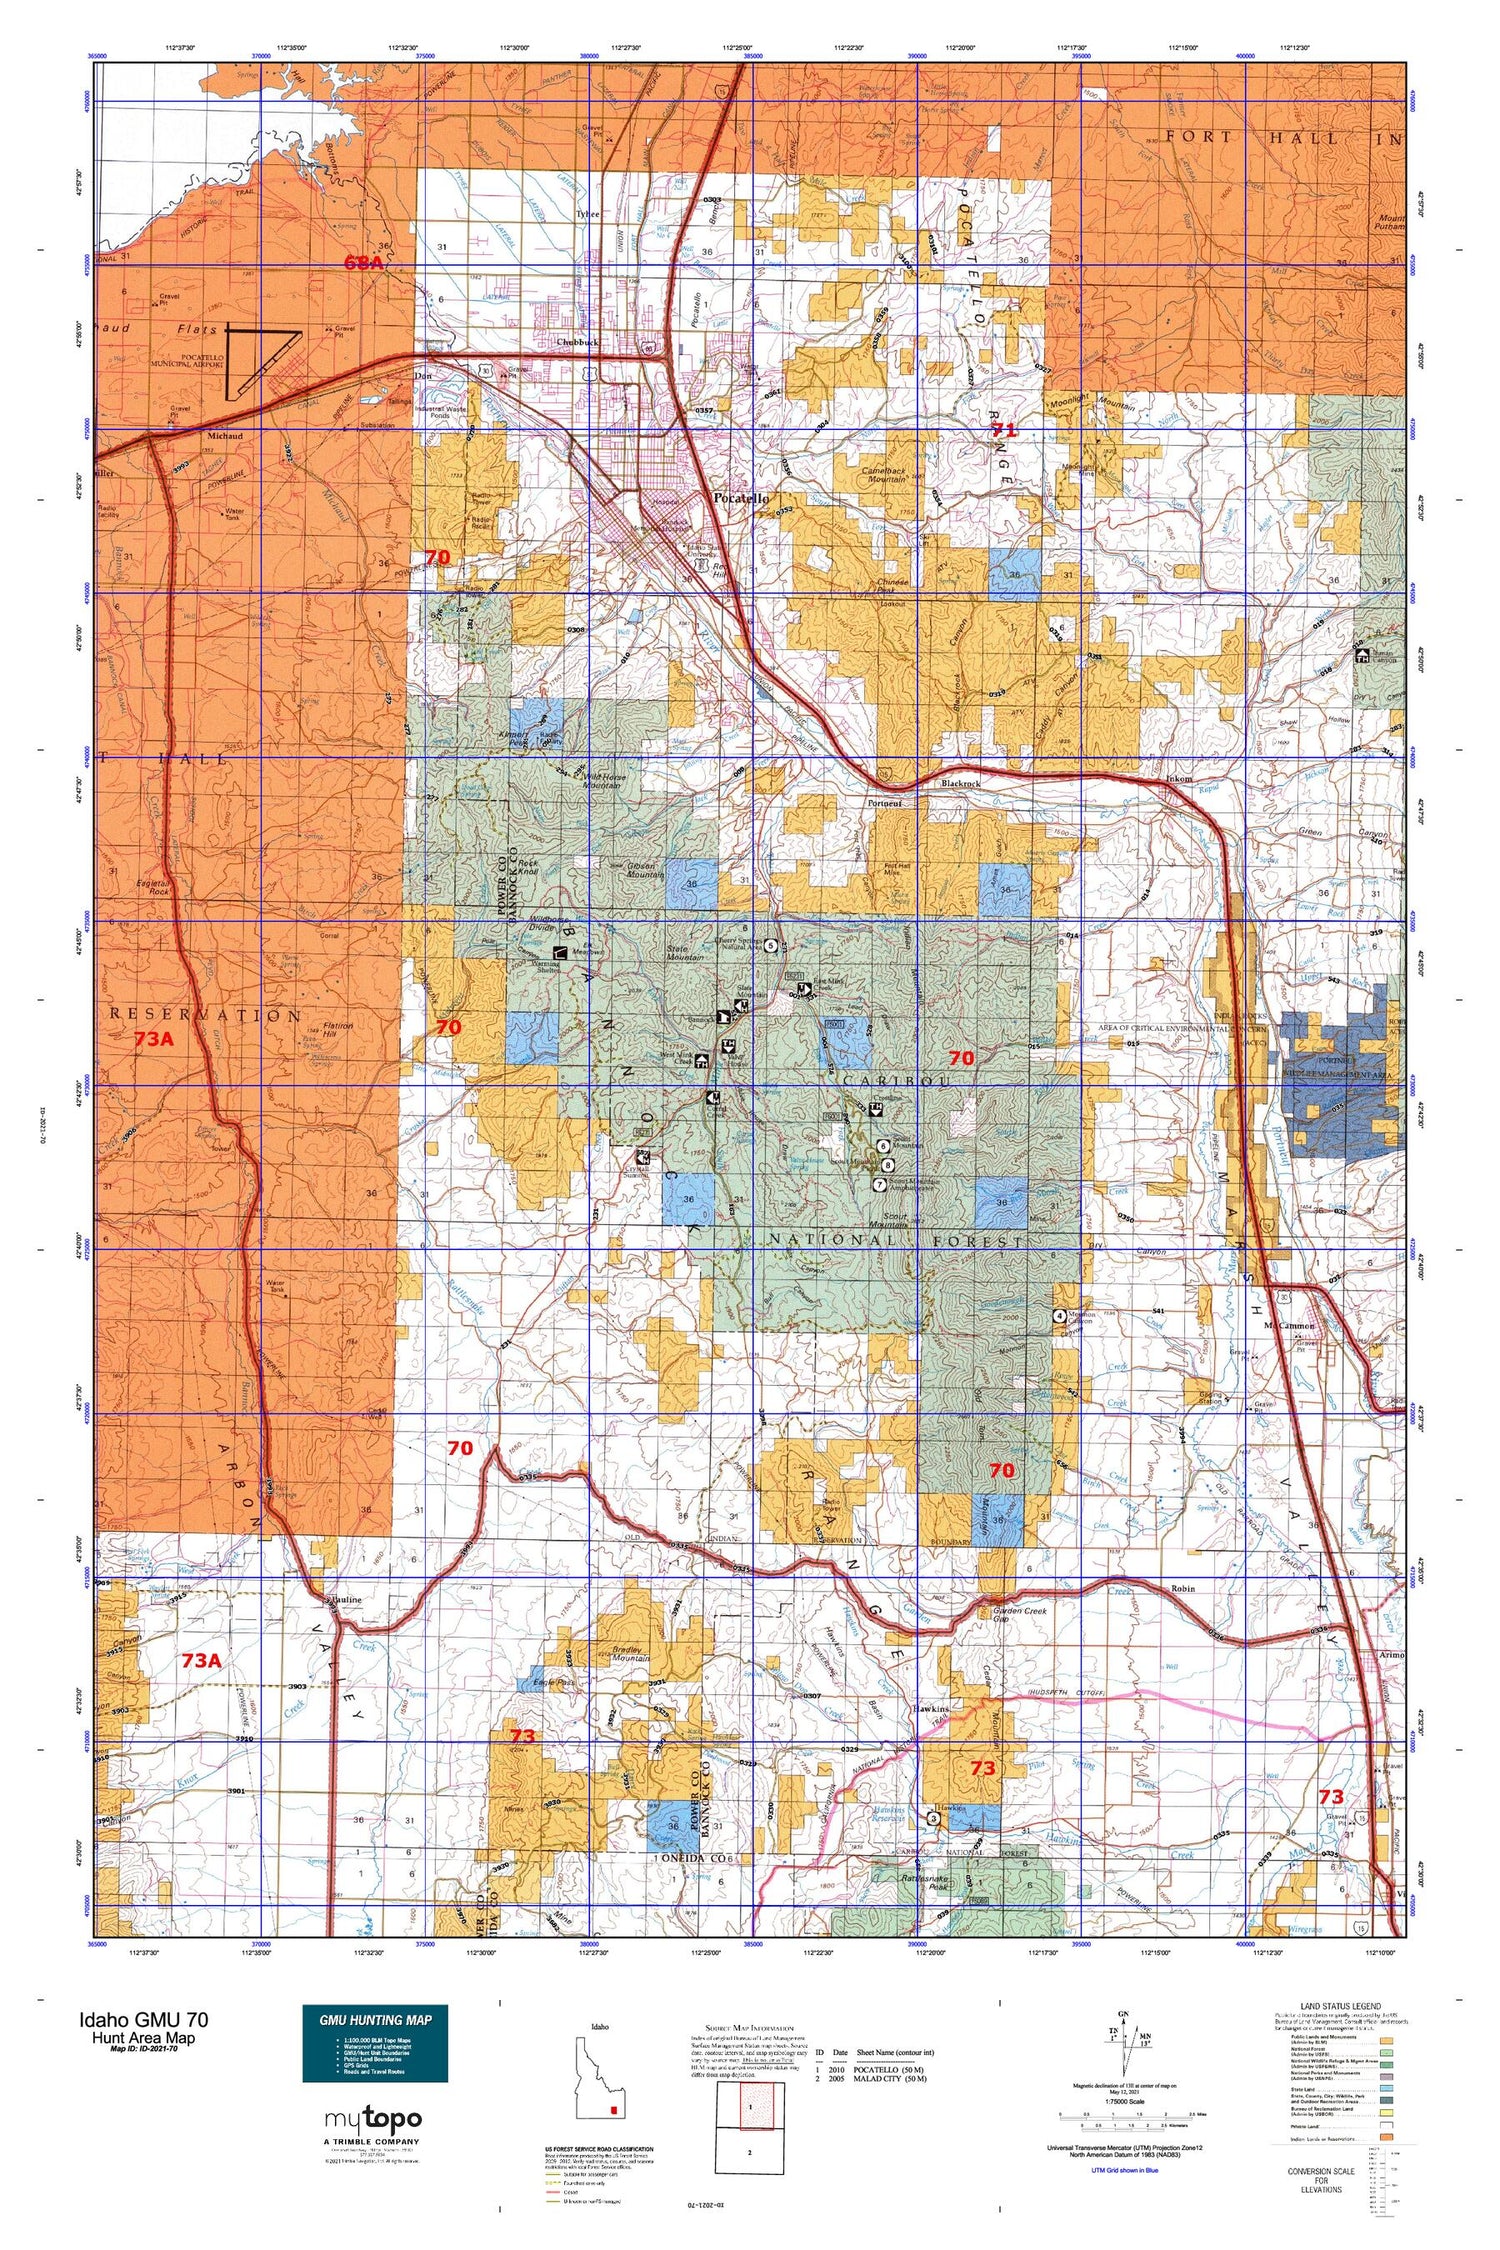 Idaho GMU 70 Map Image